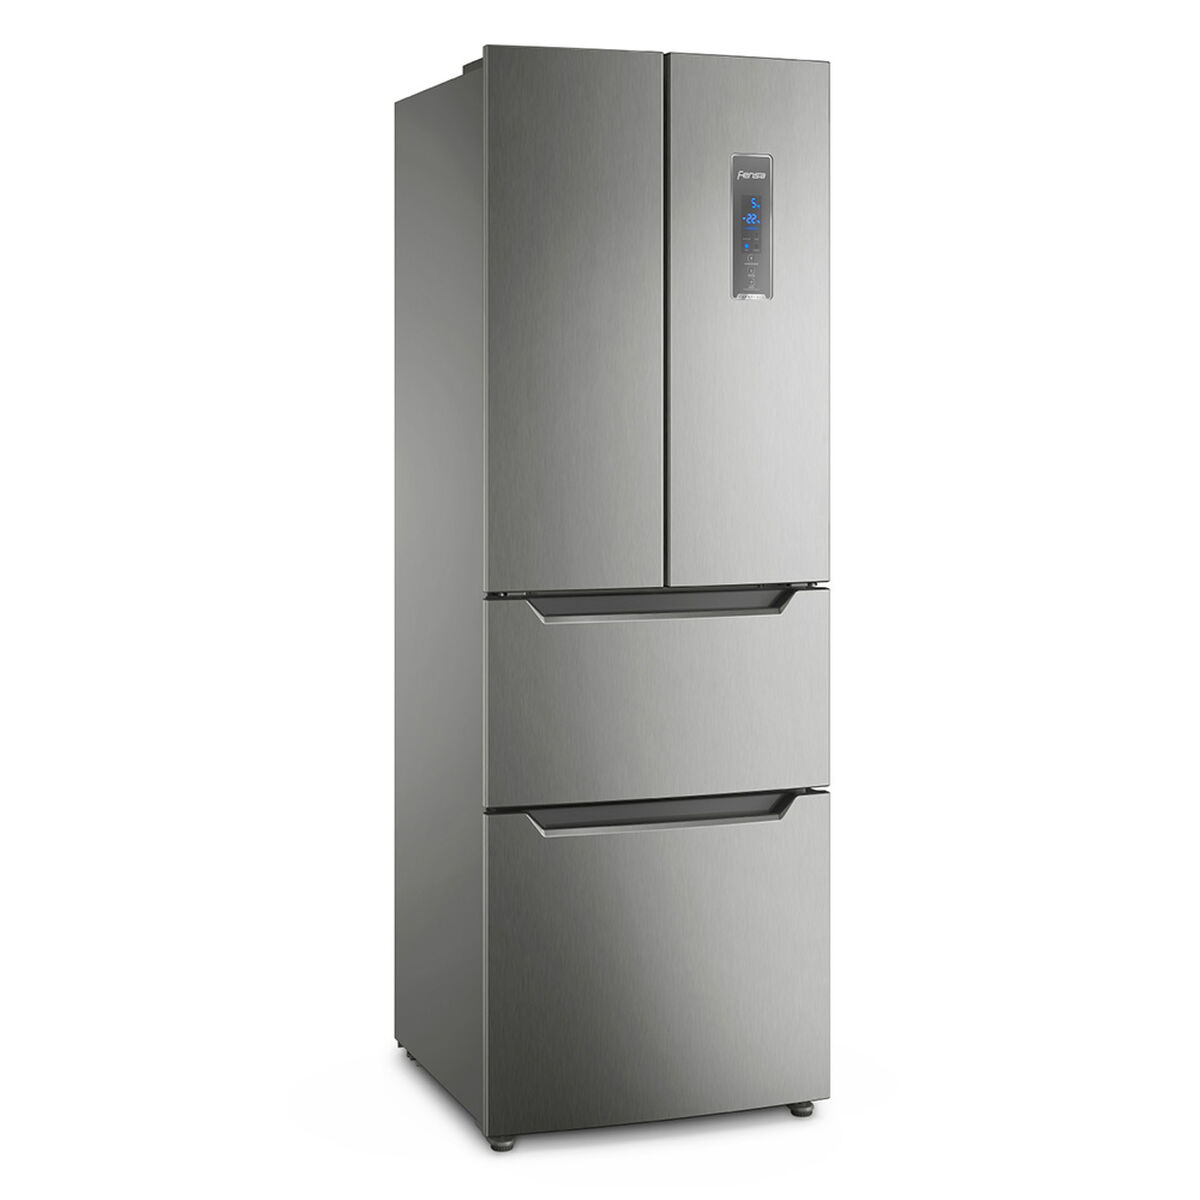 Refrigerador No Frost Fensa DM64S 298 lts.